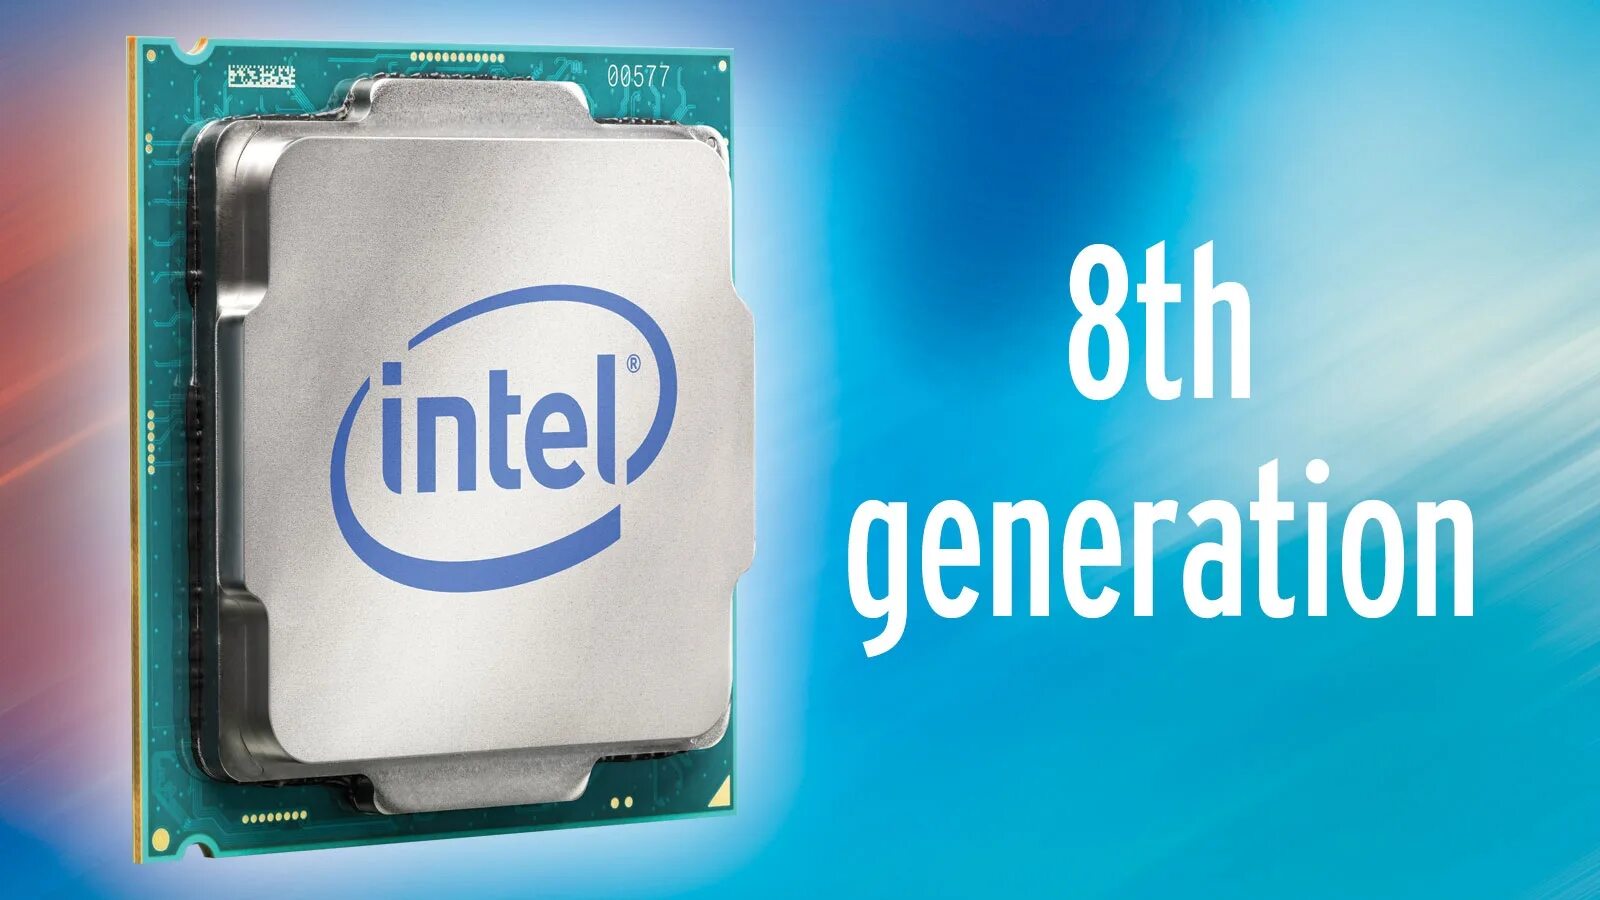 Процессор Intel Core i7 Coffee Lake. Intel Core 8th Gen. Процессор Intel Core i7 Coffee Lake чипсет. Процессор Intel Core i7-8700k. Когда вышел интел